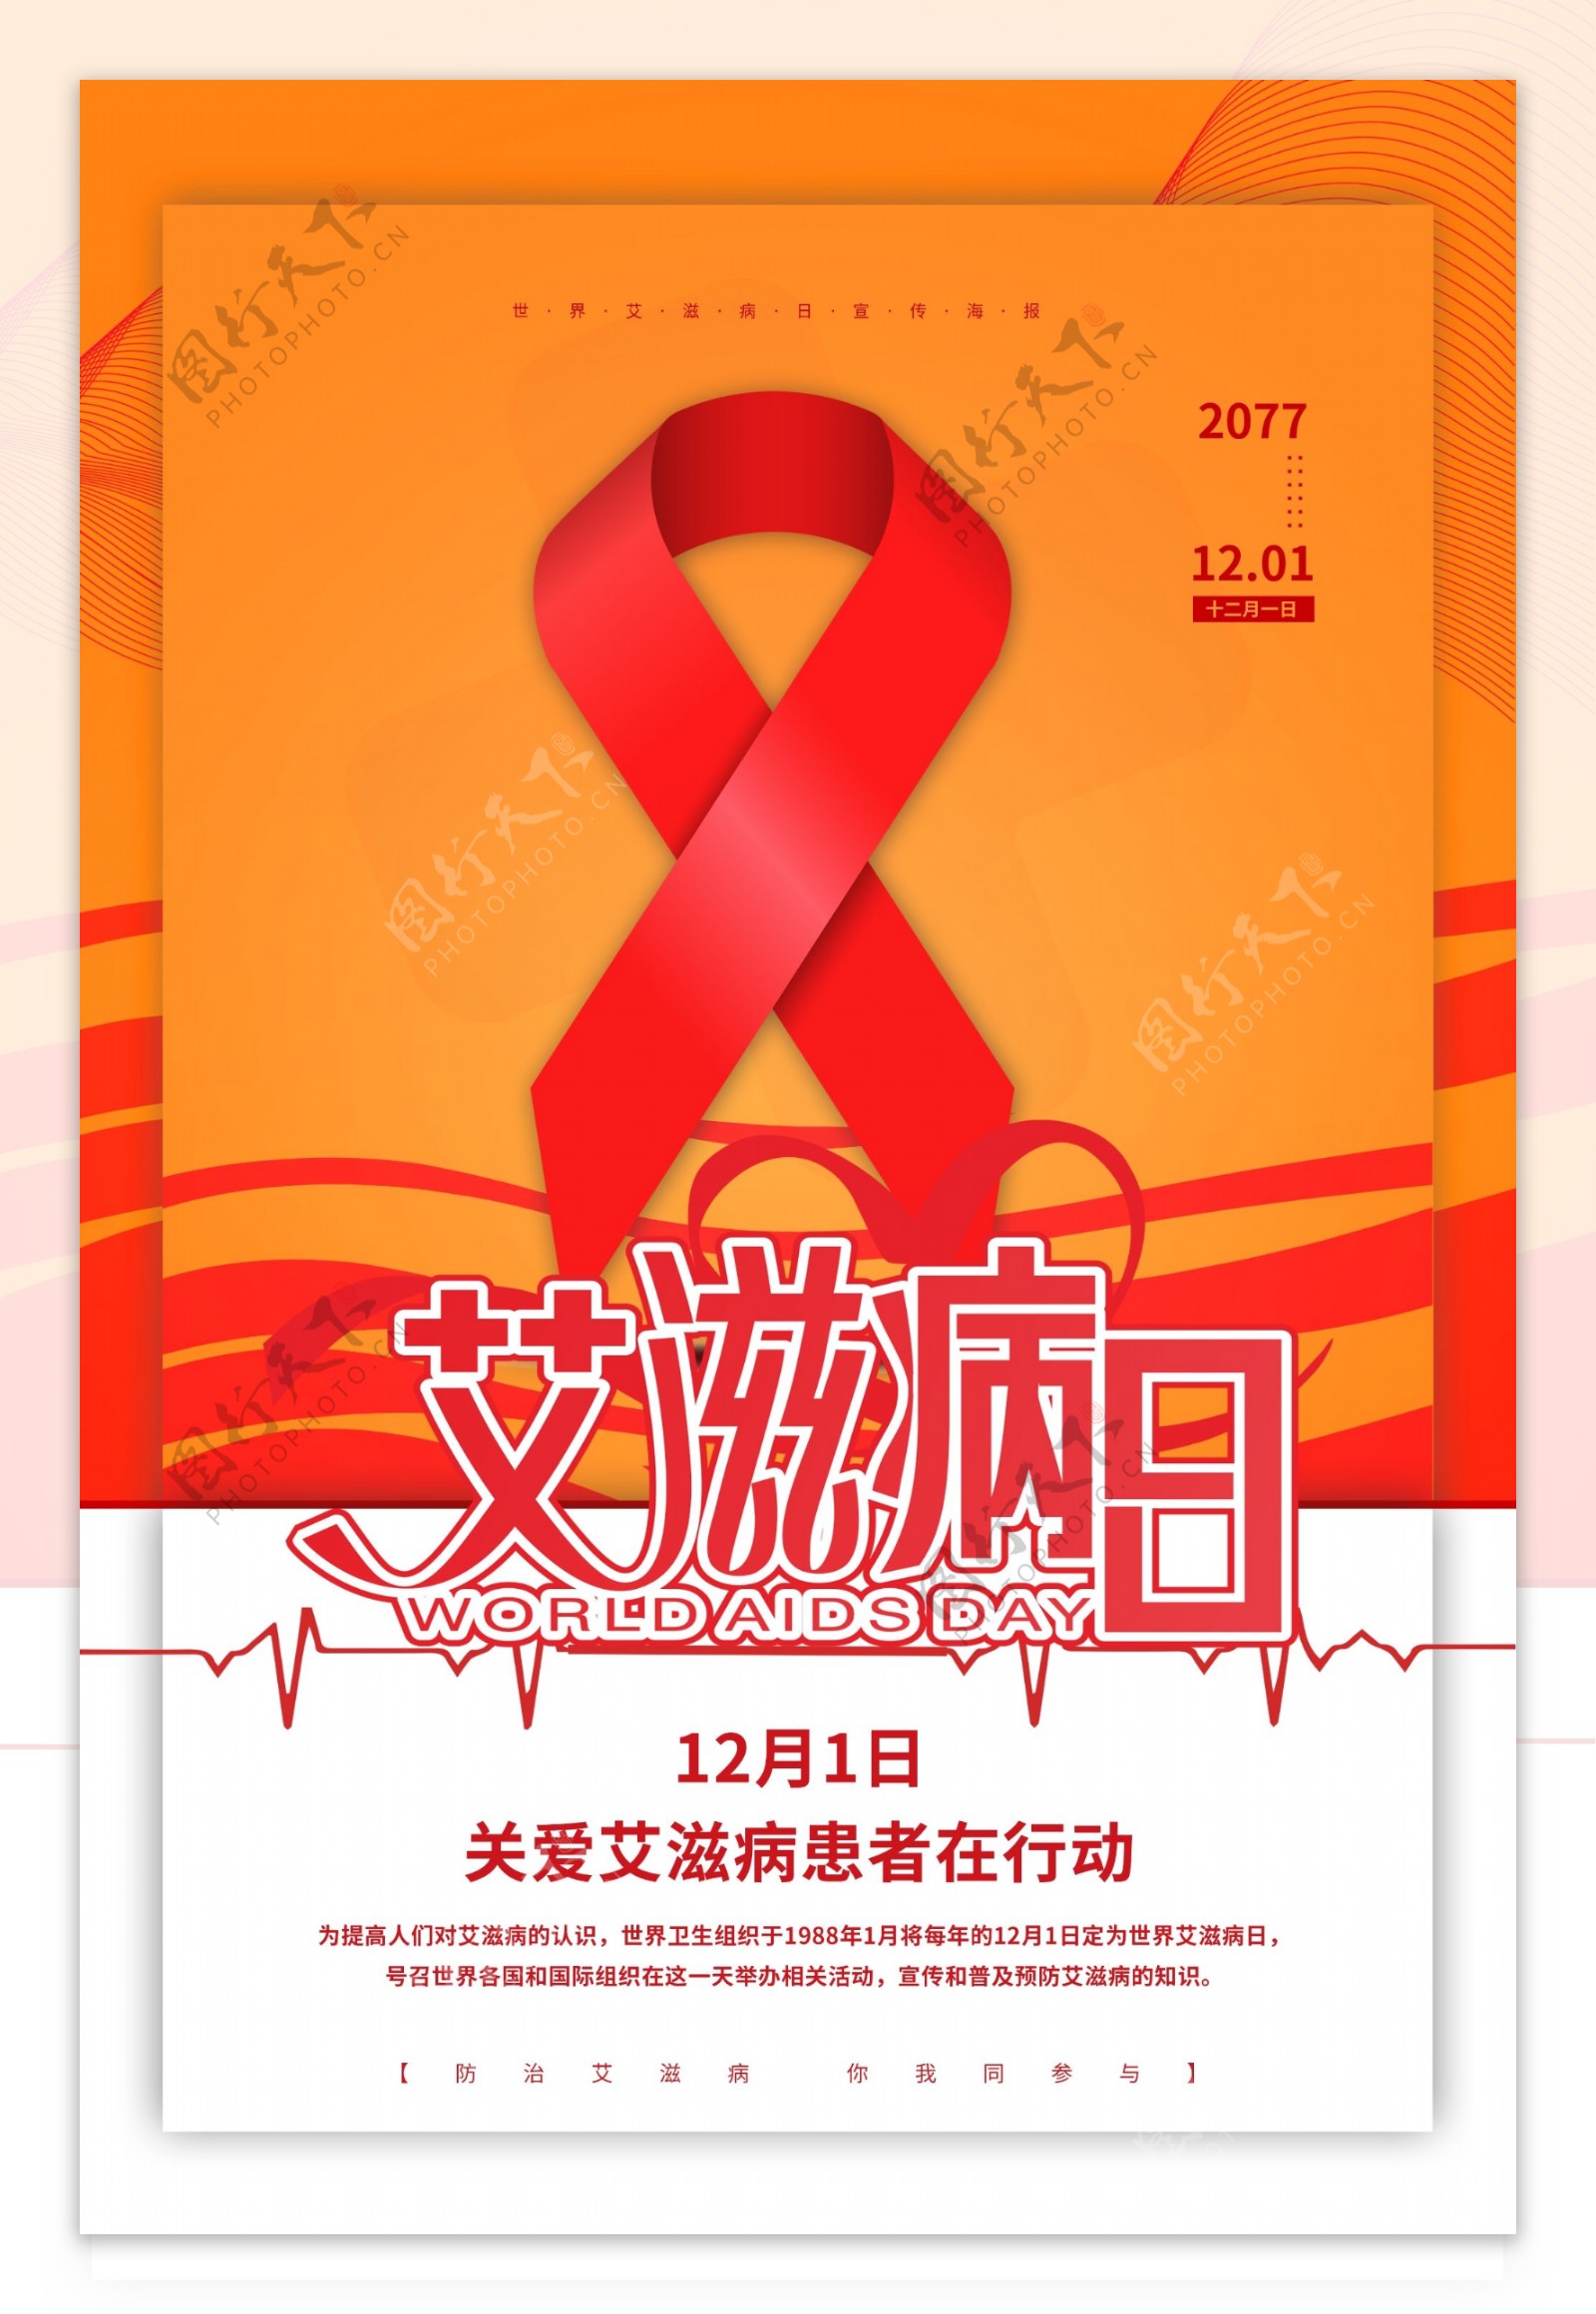 艾滋病日海报图片